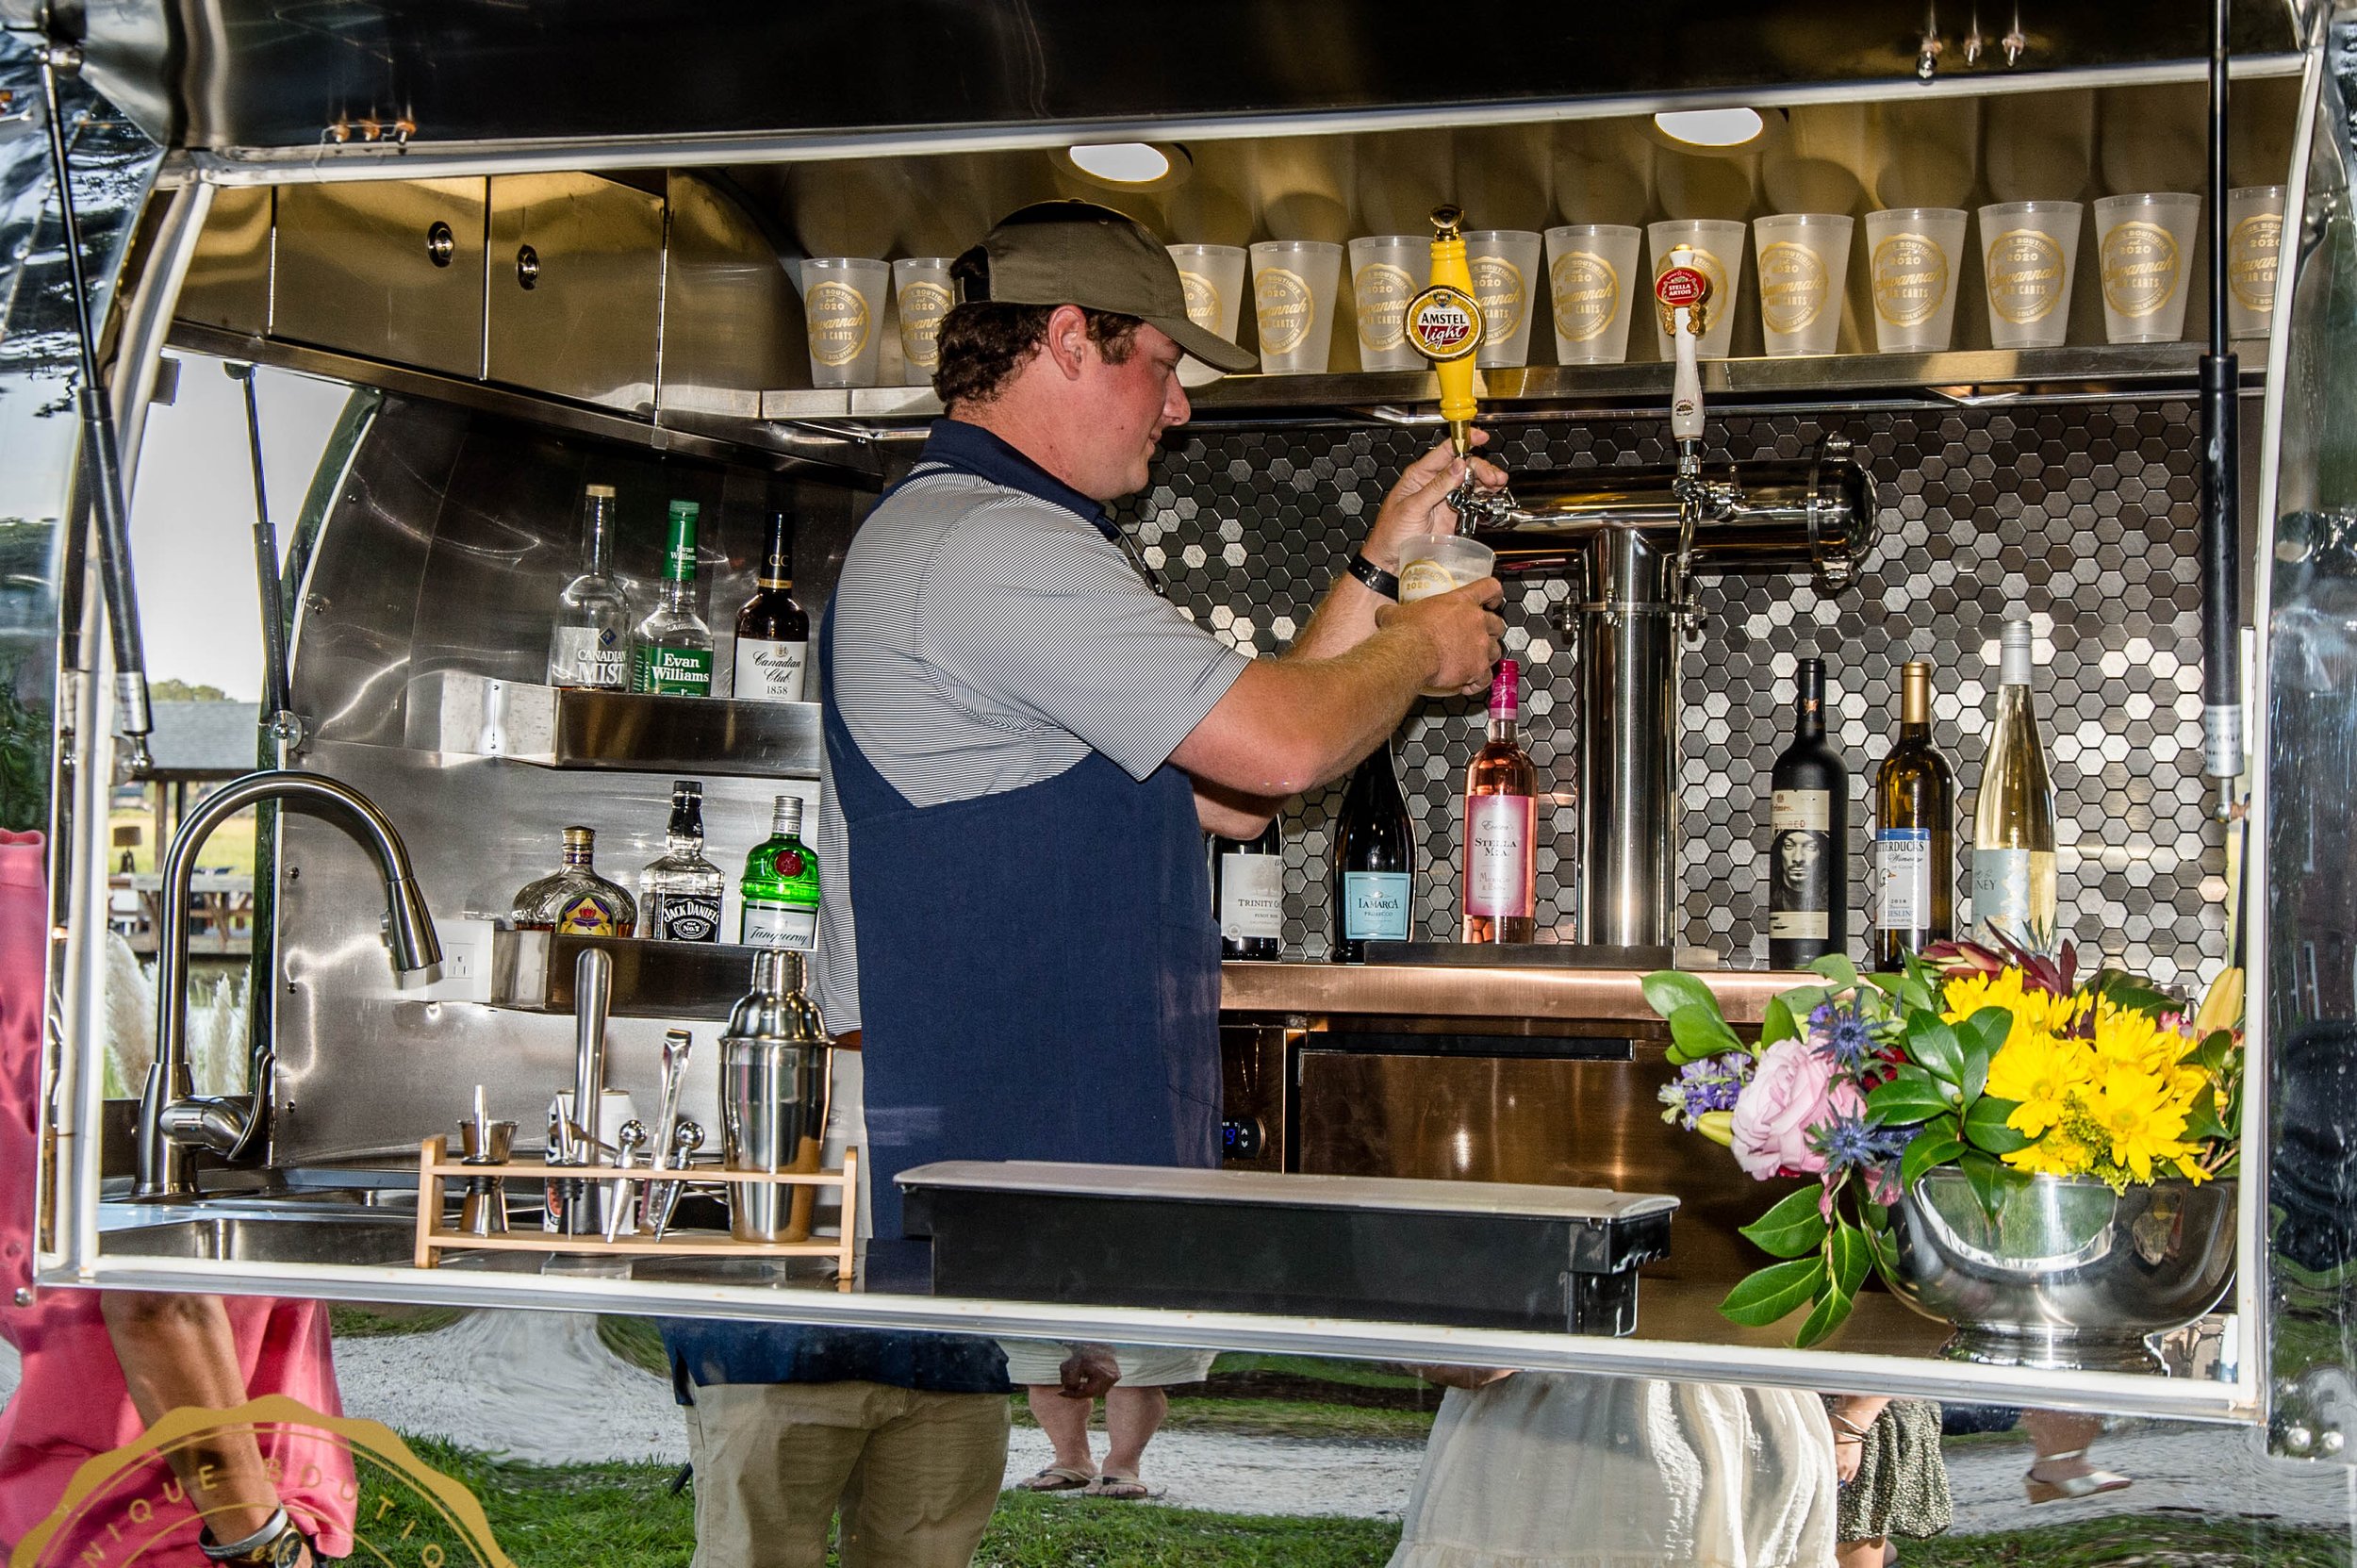 Bartender Serving Up Drinks in the Rentable Vintage Beverage Cart Trailer in Alabama.jpg